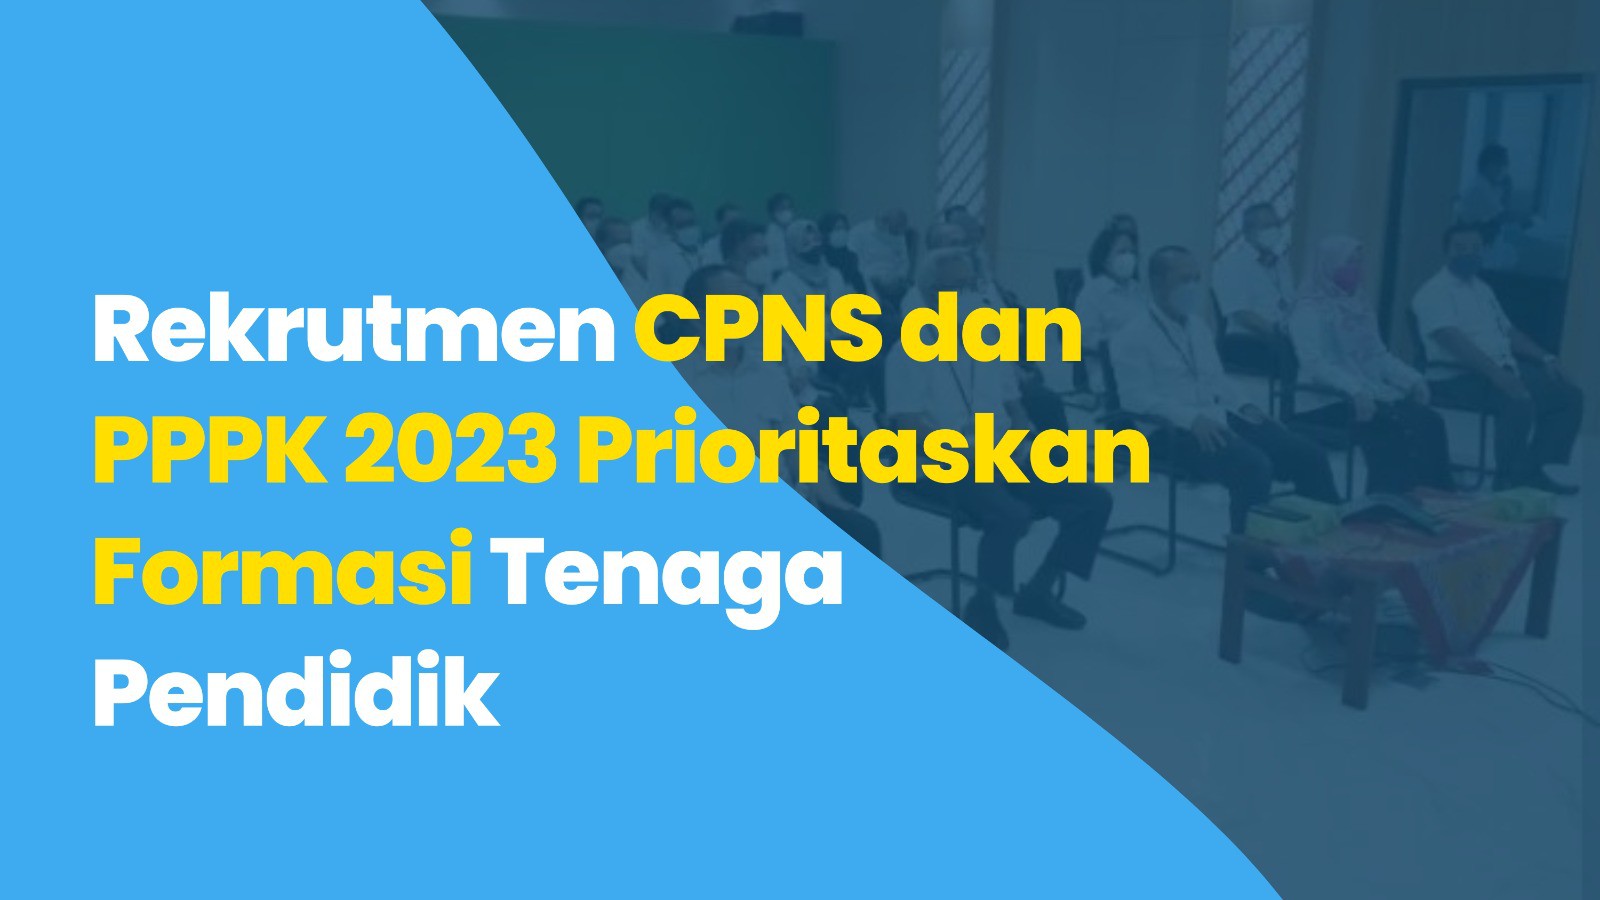 Rekrutmen CPNS dan PPPK 2023 Prioritaskan Formasi Tenaga Pendidik